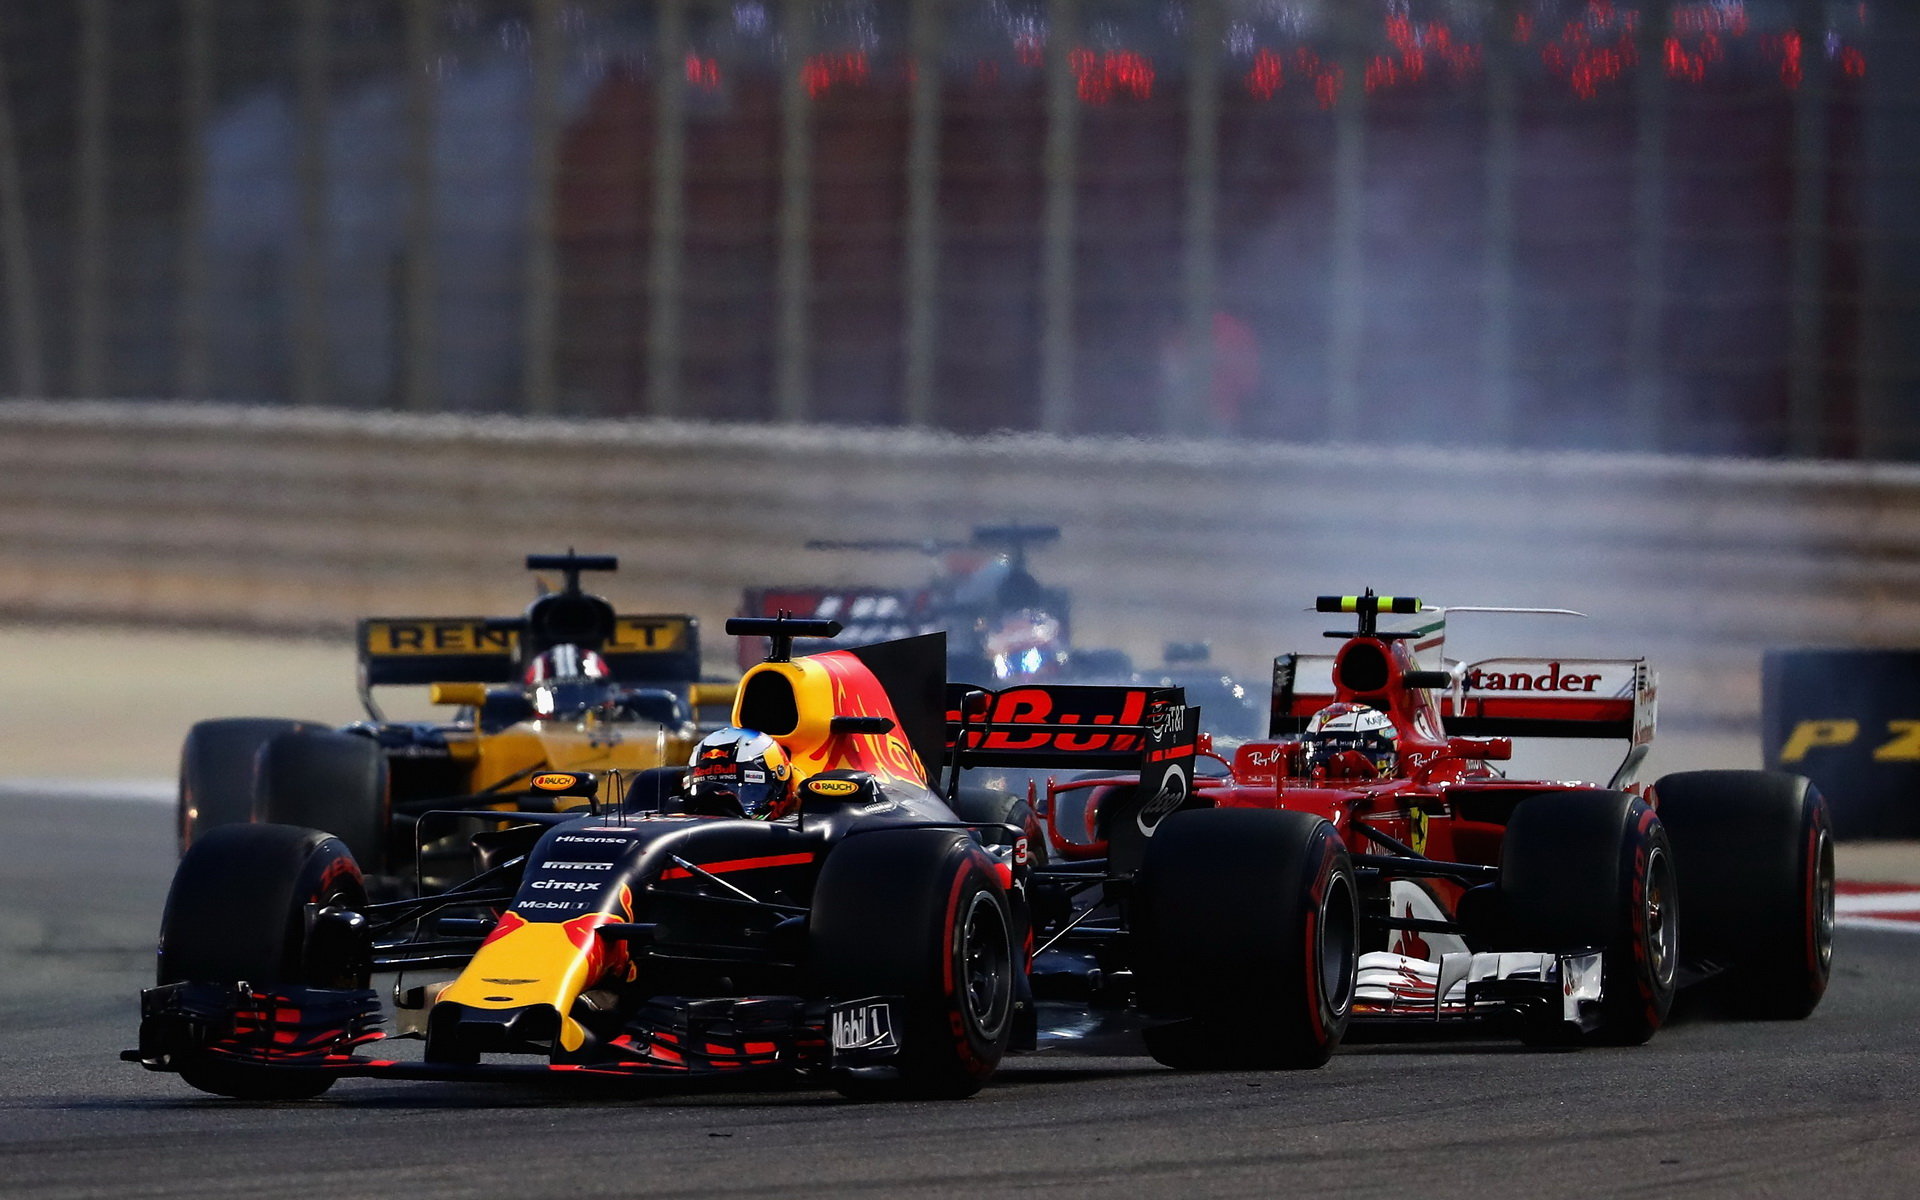 Daniel Ricciardo a Kimi Räikkönen v závodě v Bahrajnu